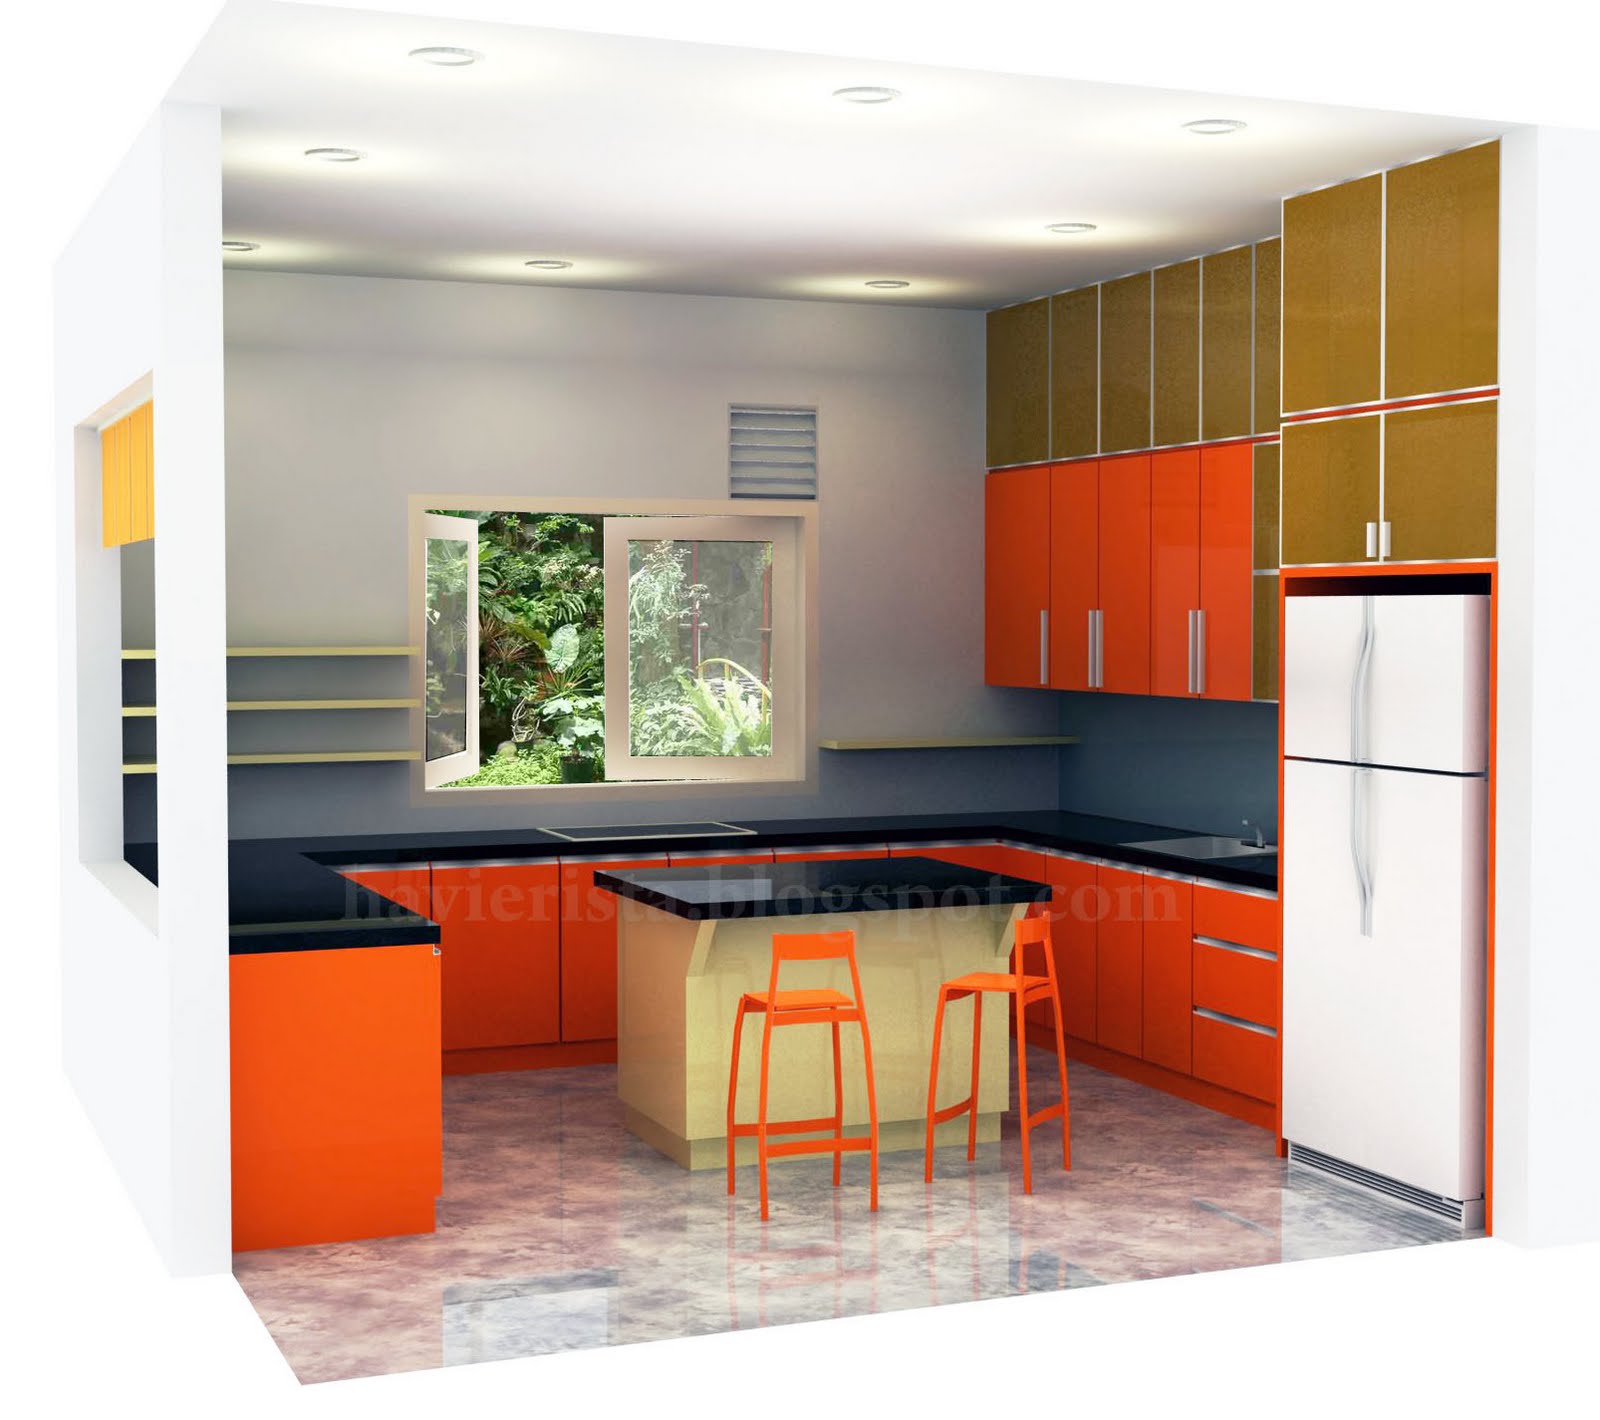 BLUE STRIPES: Cheerful Kitchen With Orange